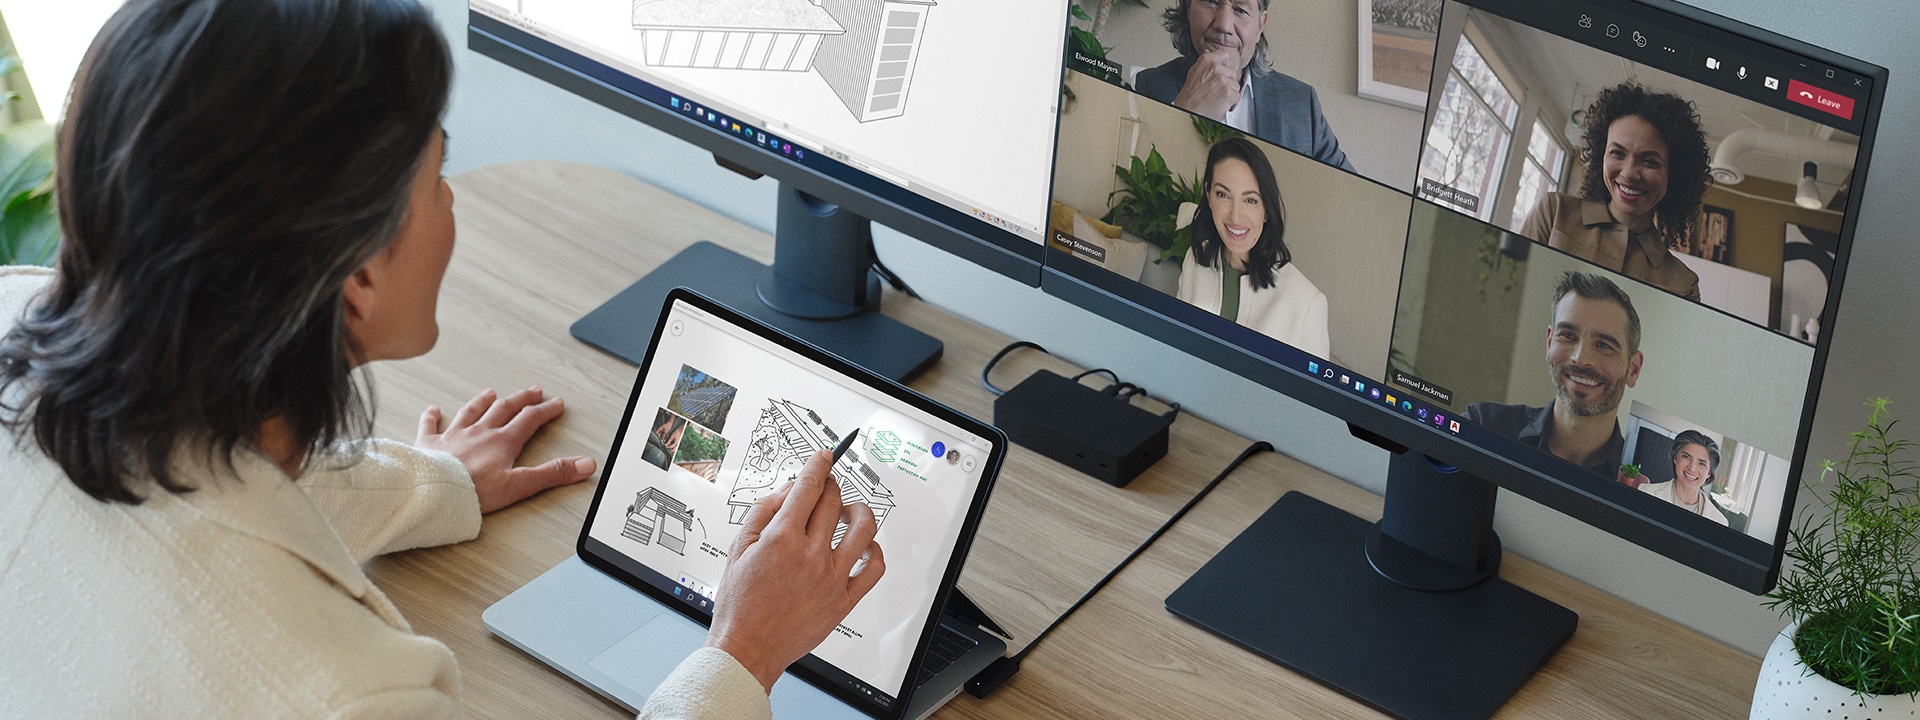 Une personne interagit avec l’écran du Surface Laptop Studio connecté à des écrans externes